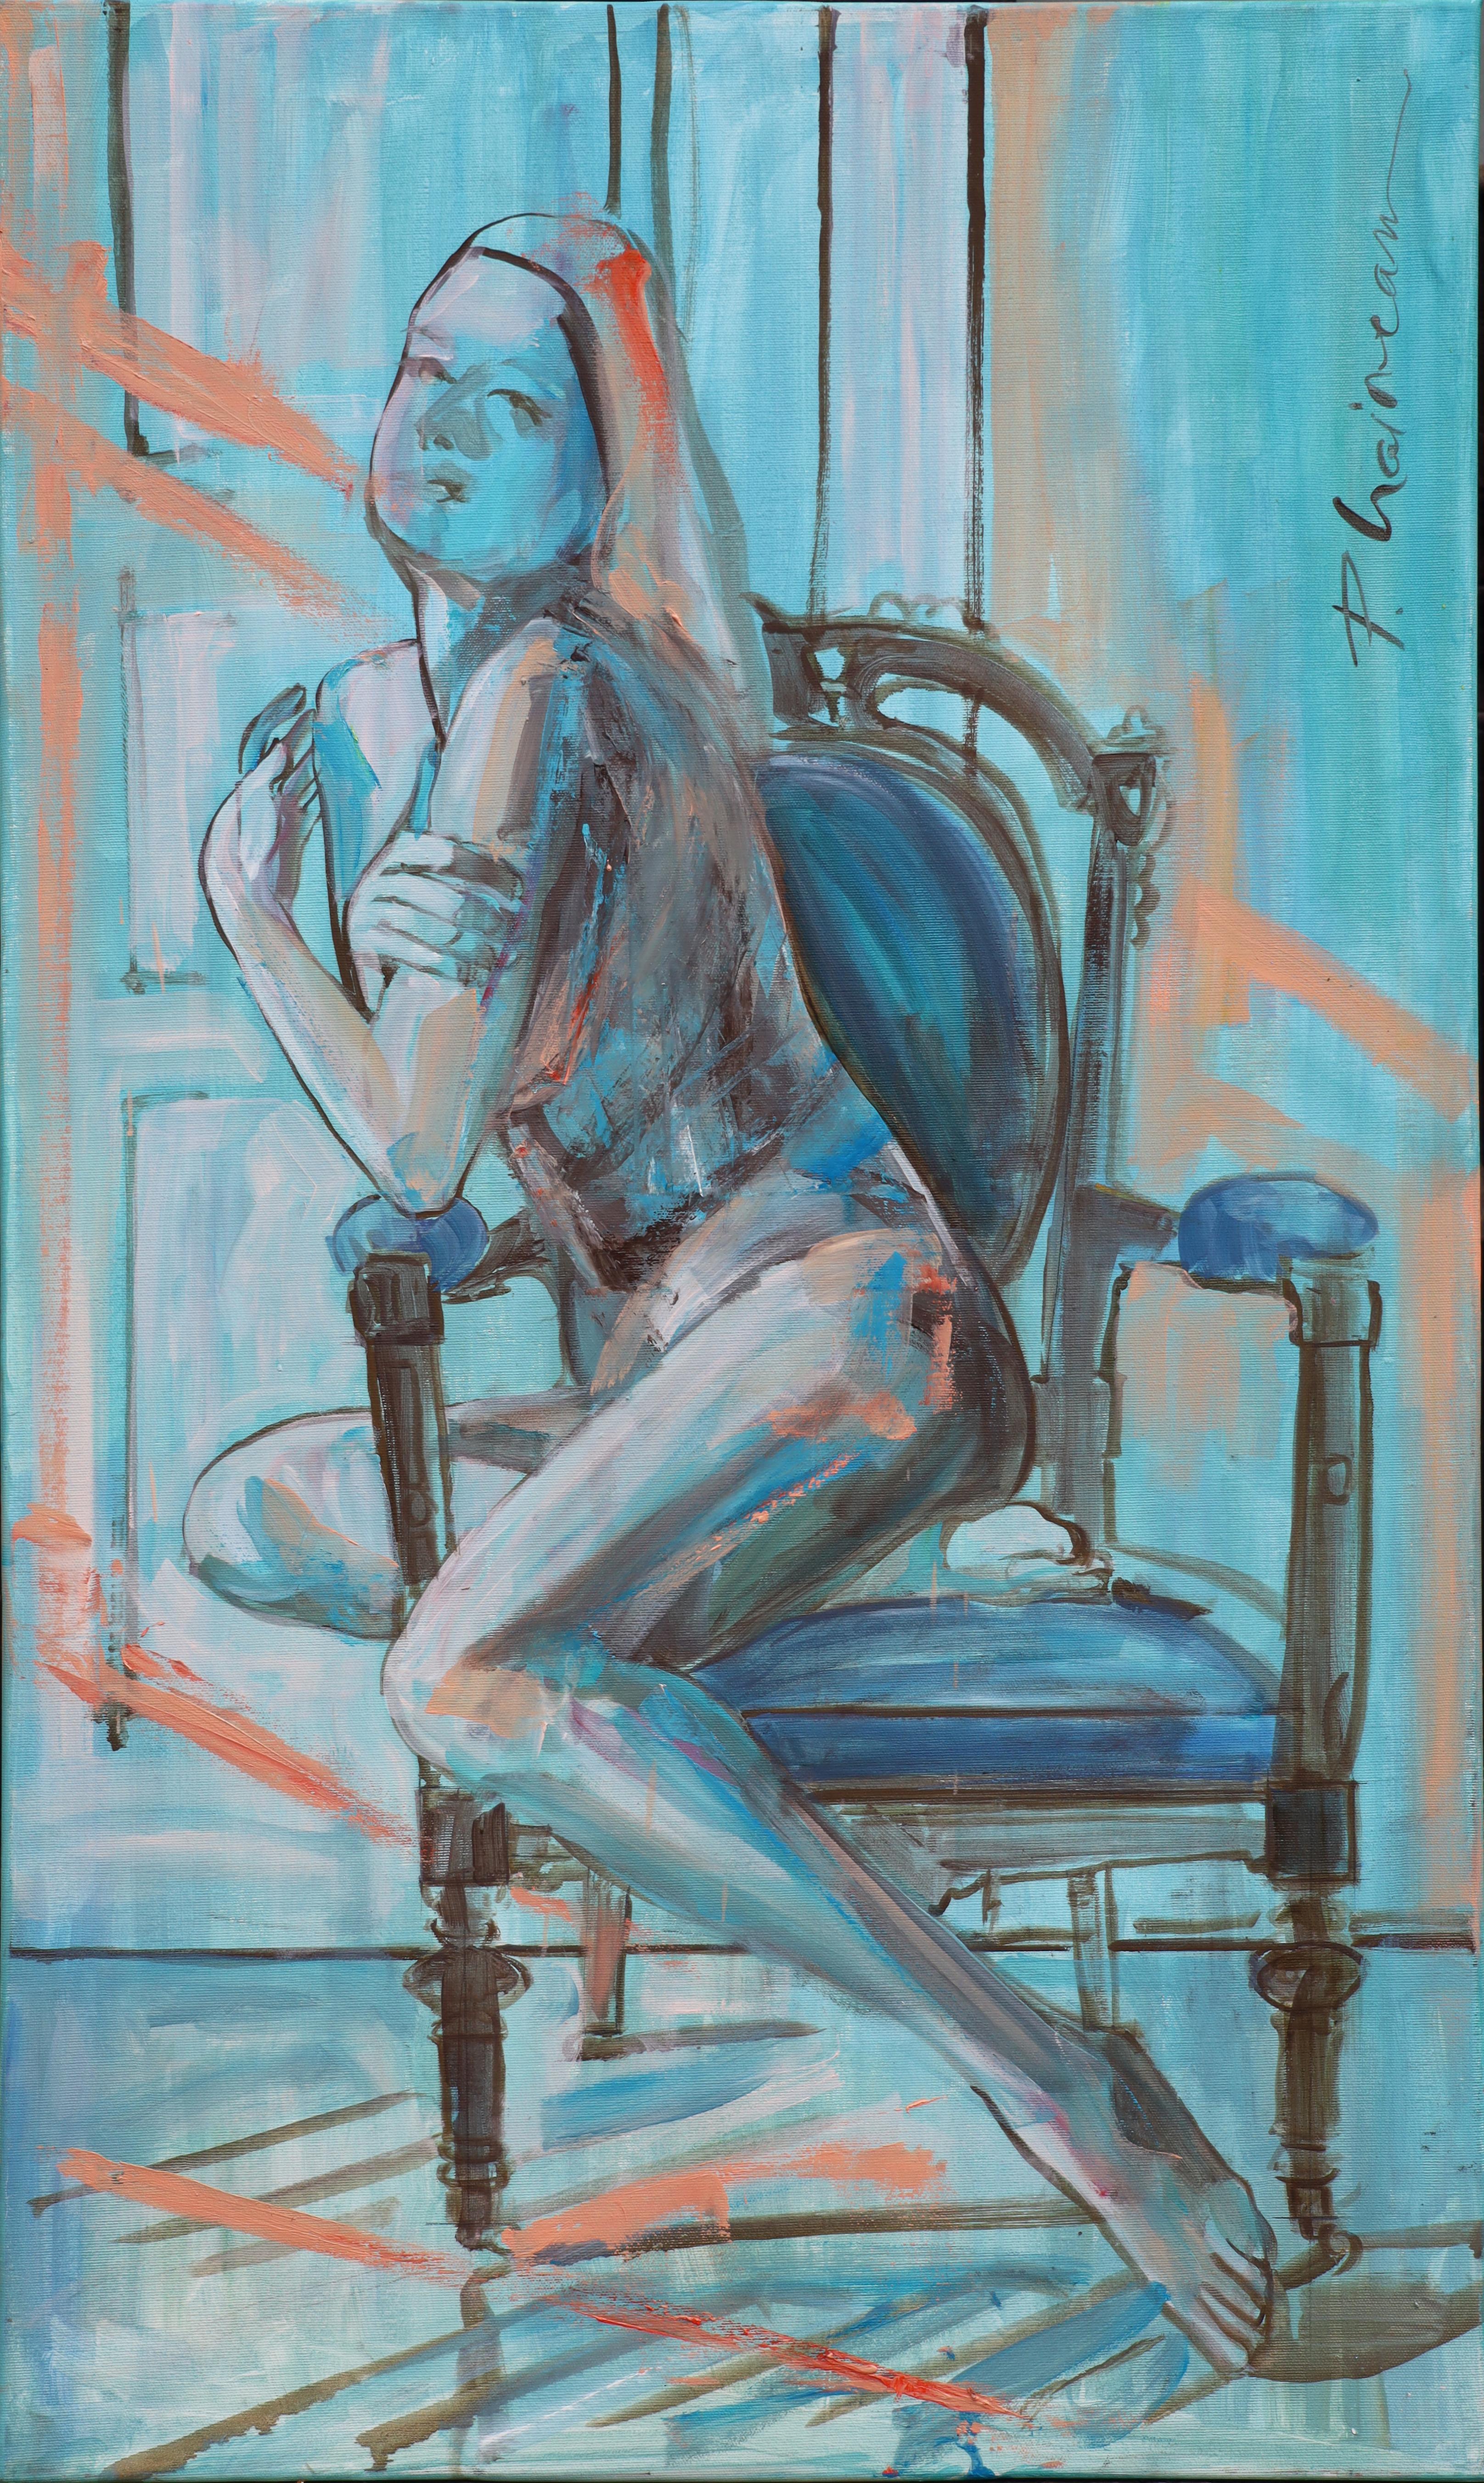 Sonnenaufgang (Akt auf Sessel 4)
Teil meiner Serie "Nude in Interior" und Teil der Einzelausstellung Mixed Moods, die noch bis zum 29. September zu sehen ist.
Originalgemälde.  Größe 39x23in / 100x60cm .

Versendet gestreckt, wie es ist, bereit zum